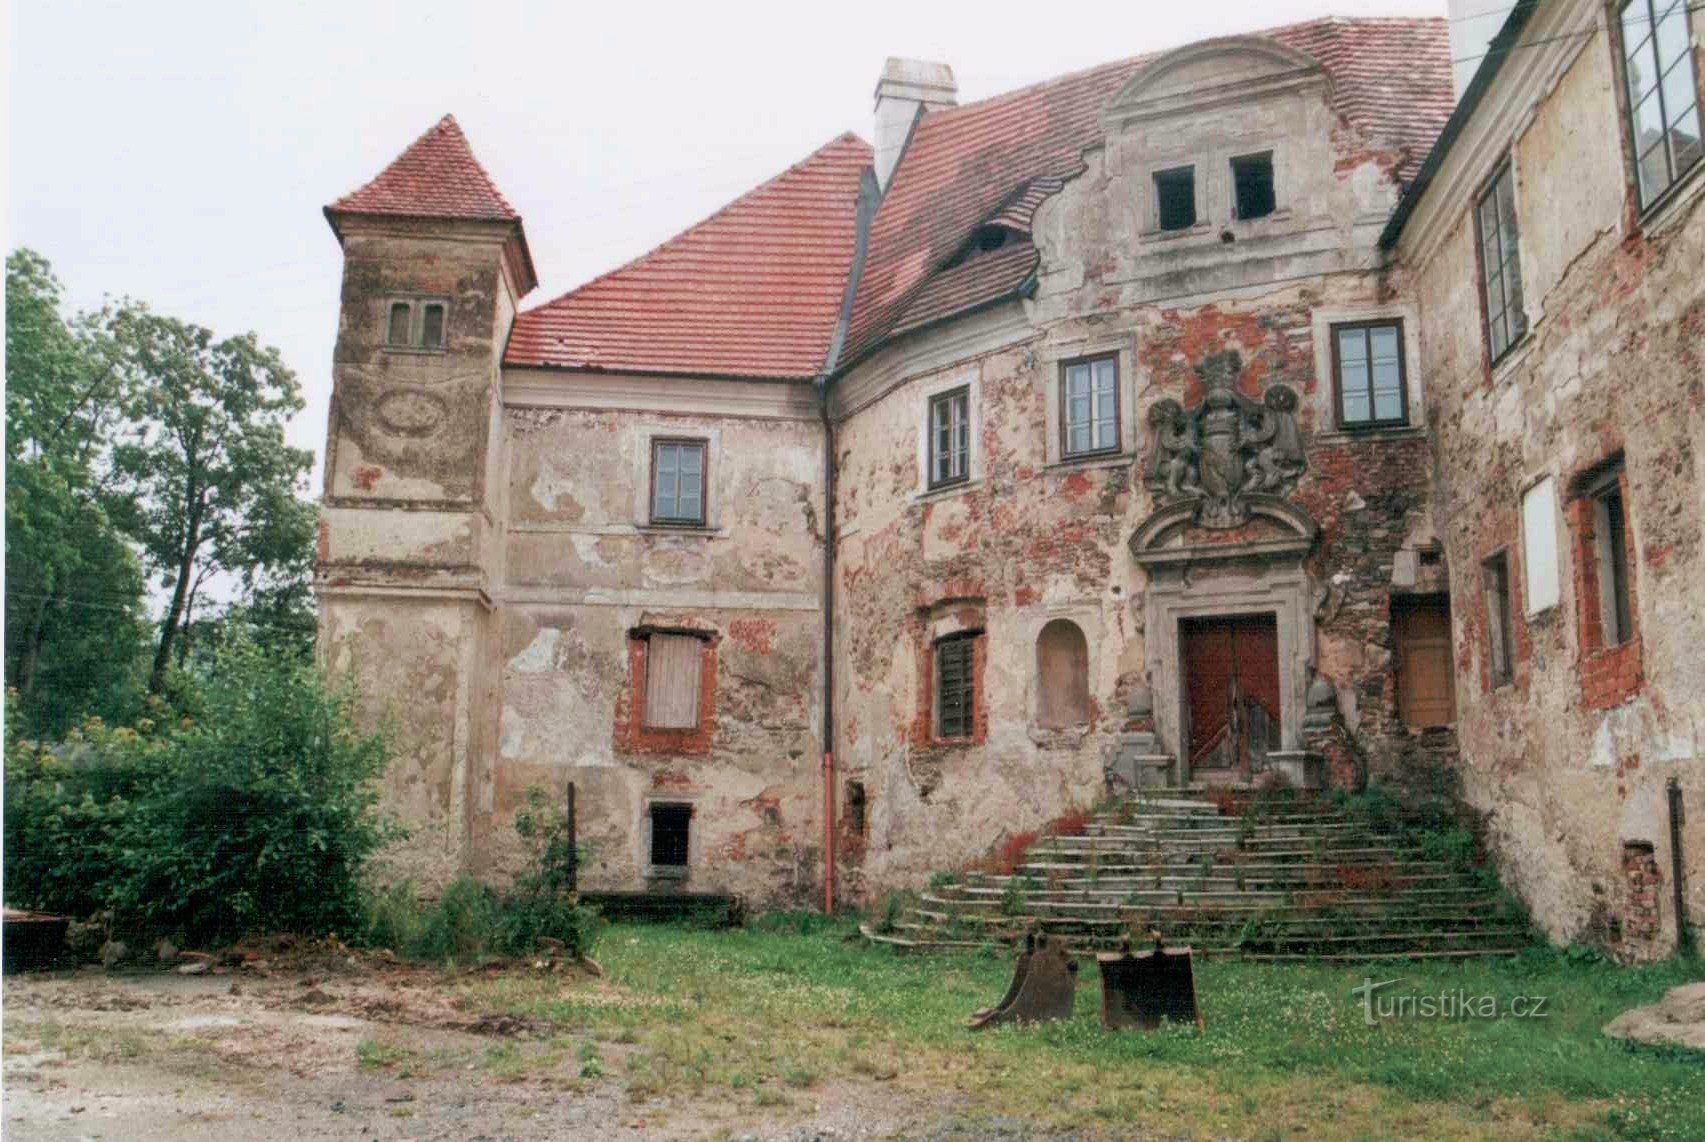 slot i Pobežovice, jeg håber, at dette ikke længere er sandt